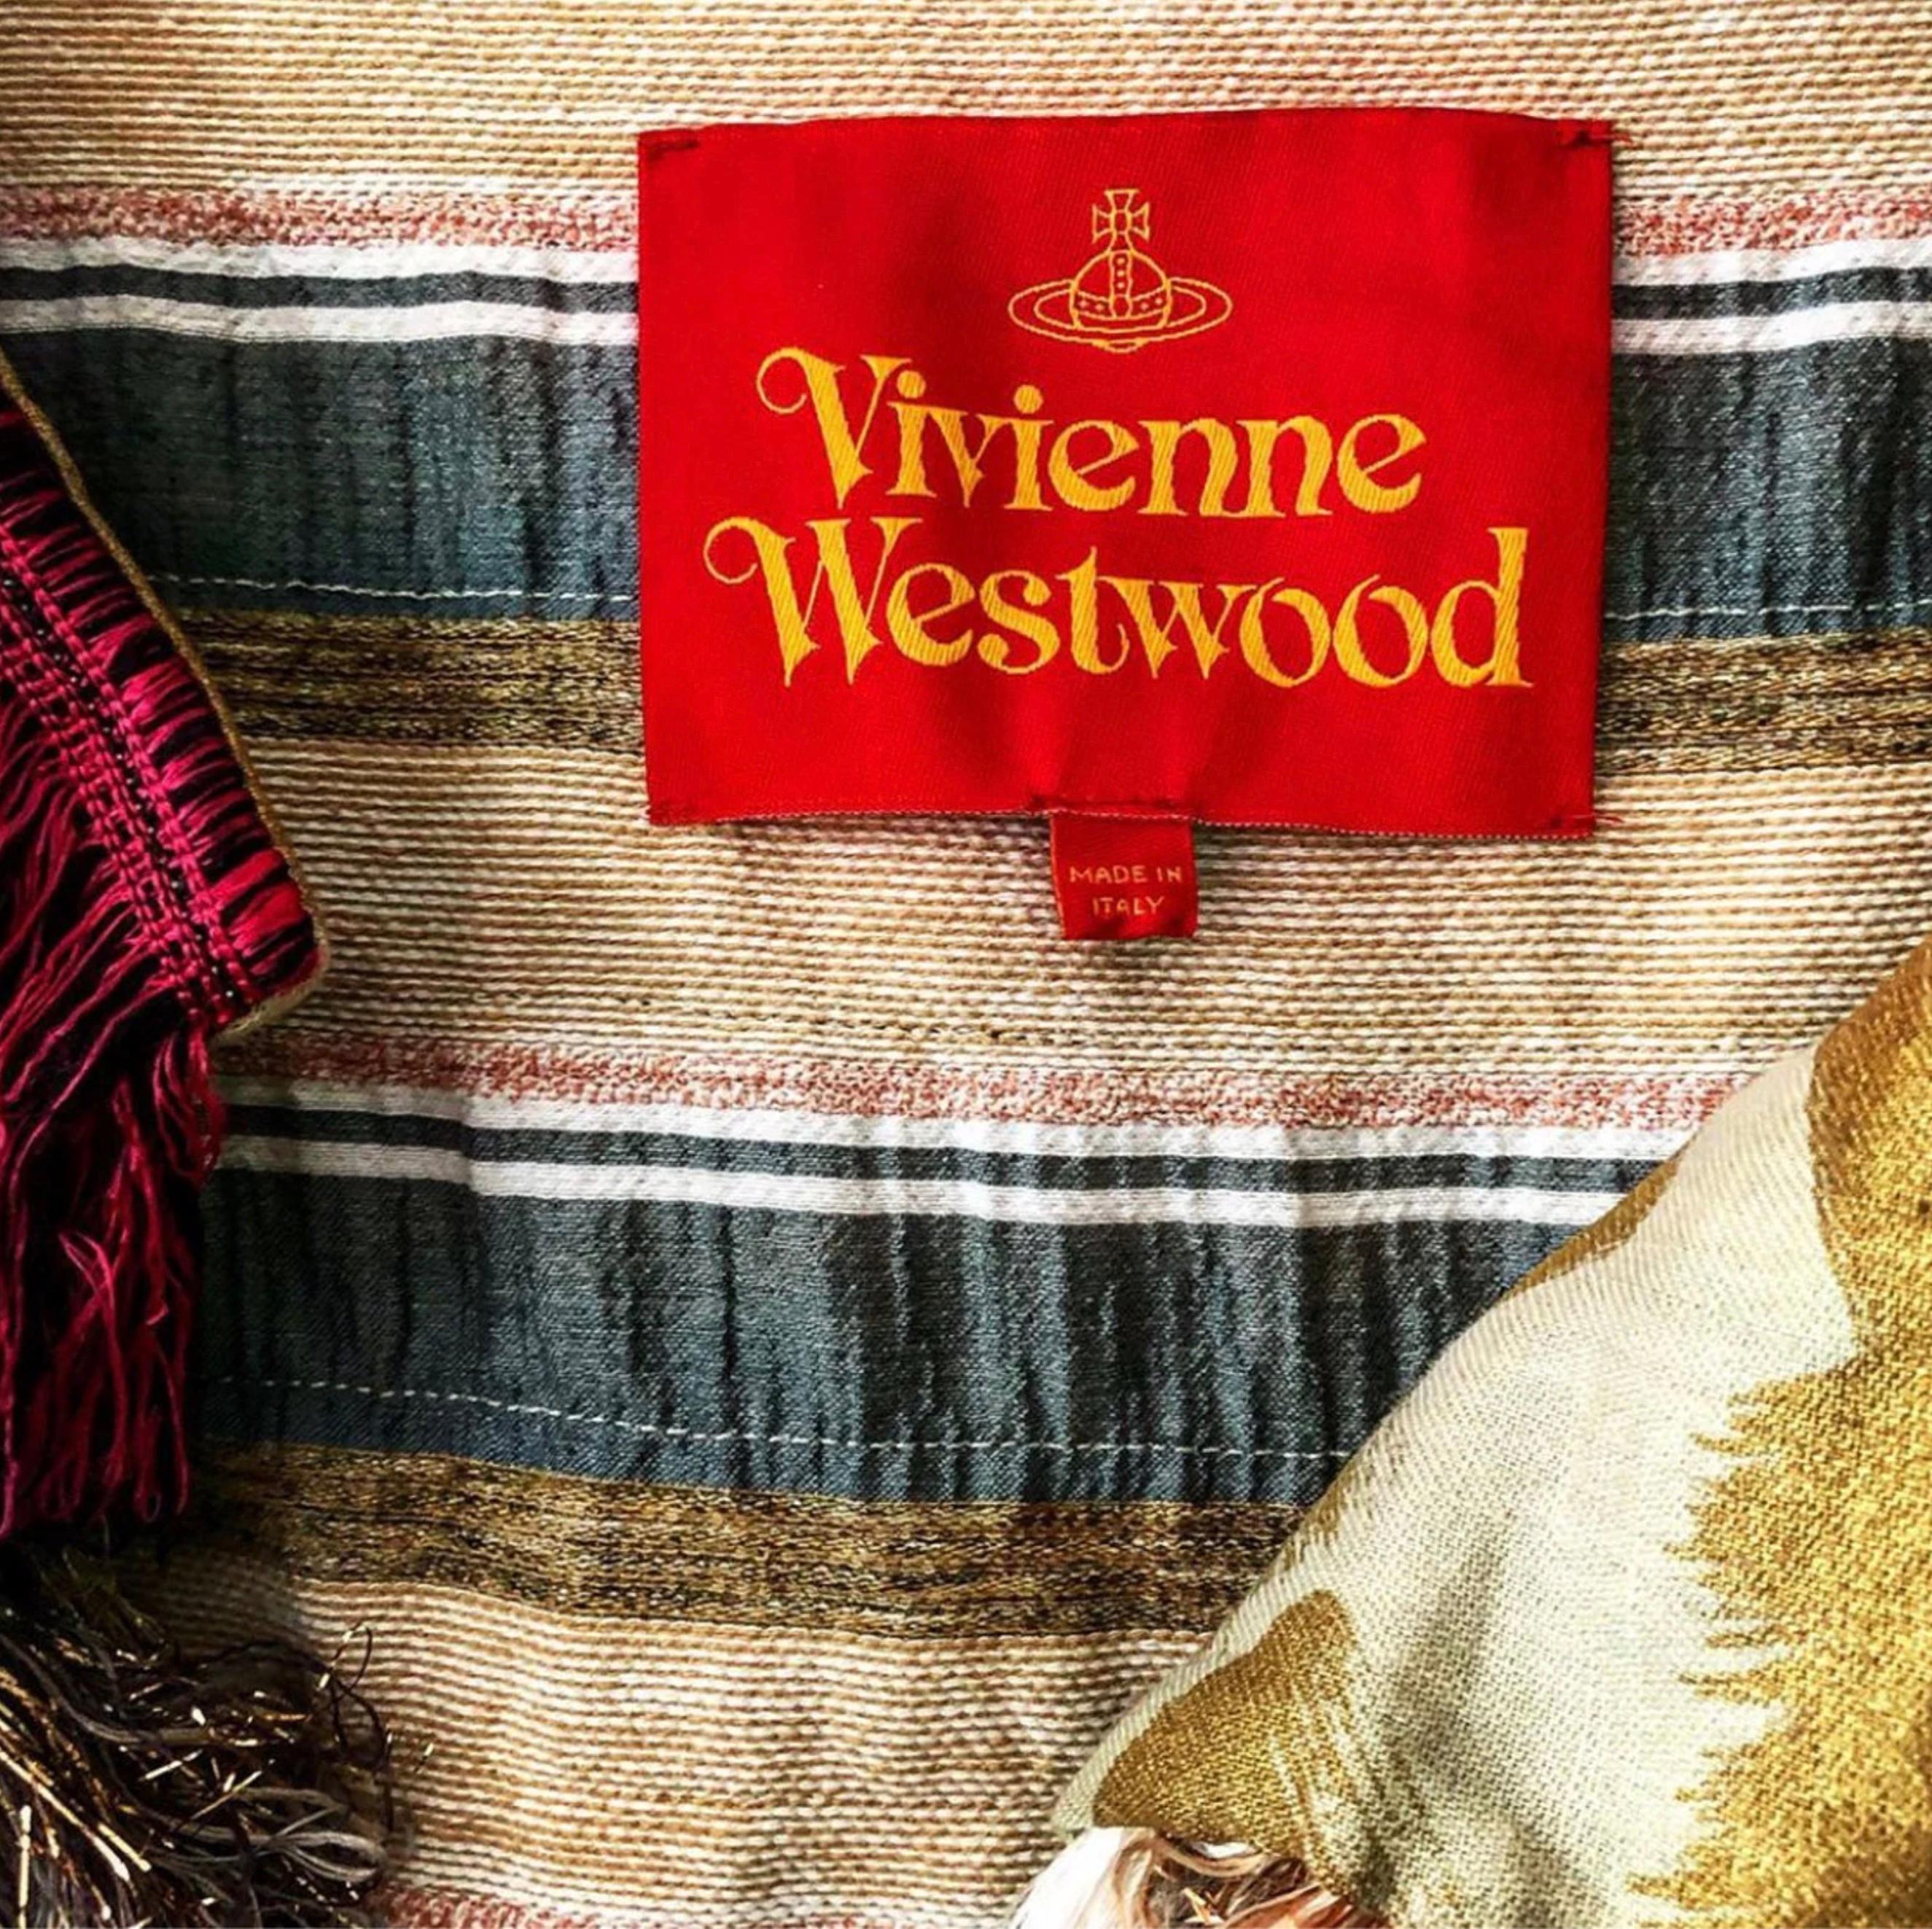 
Äußerst seltenes Sammlerstück von Vivienne Westwood.
Erstaunliche mehrfarbige Jacke aus einer Baumwoll-Leinen-Mischung mit goldenen Fransen.
Tragbare Kunst. Ich liebe diese Farben und das absolut typische, originelle und kultige